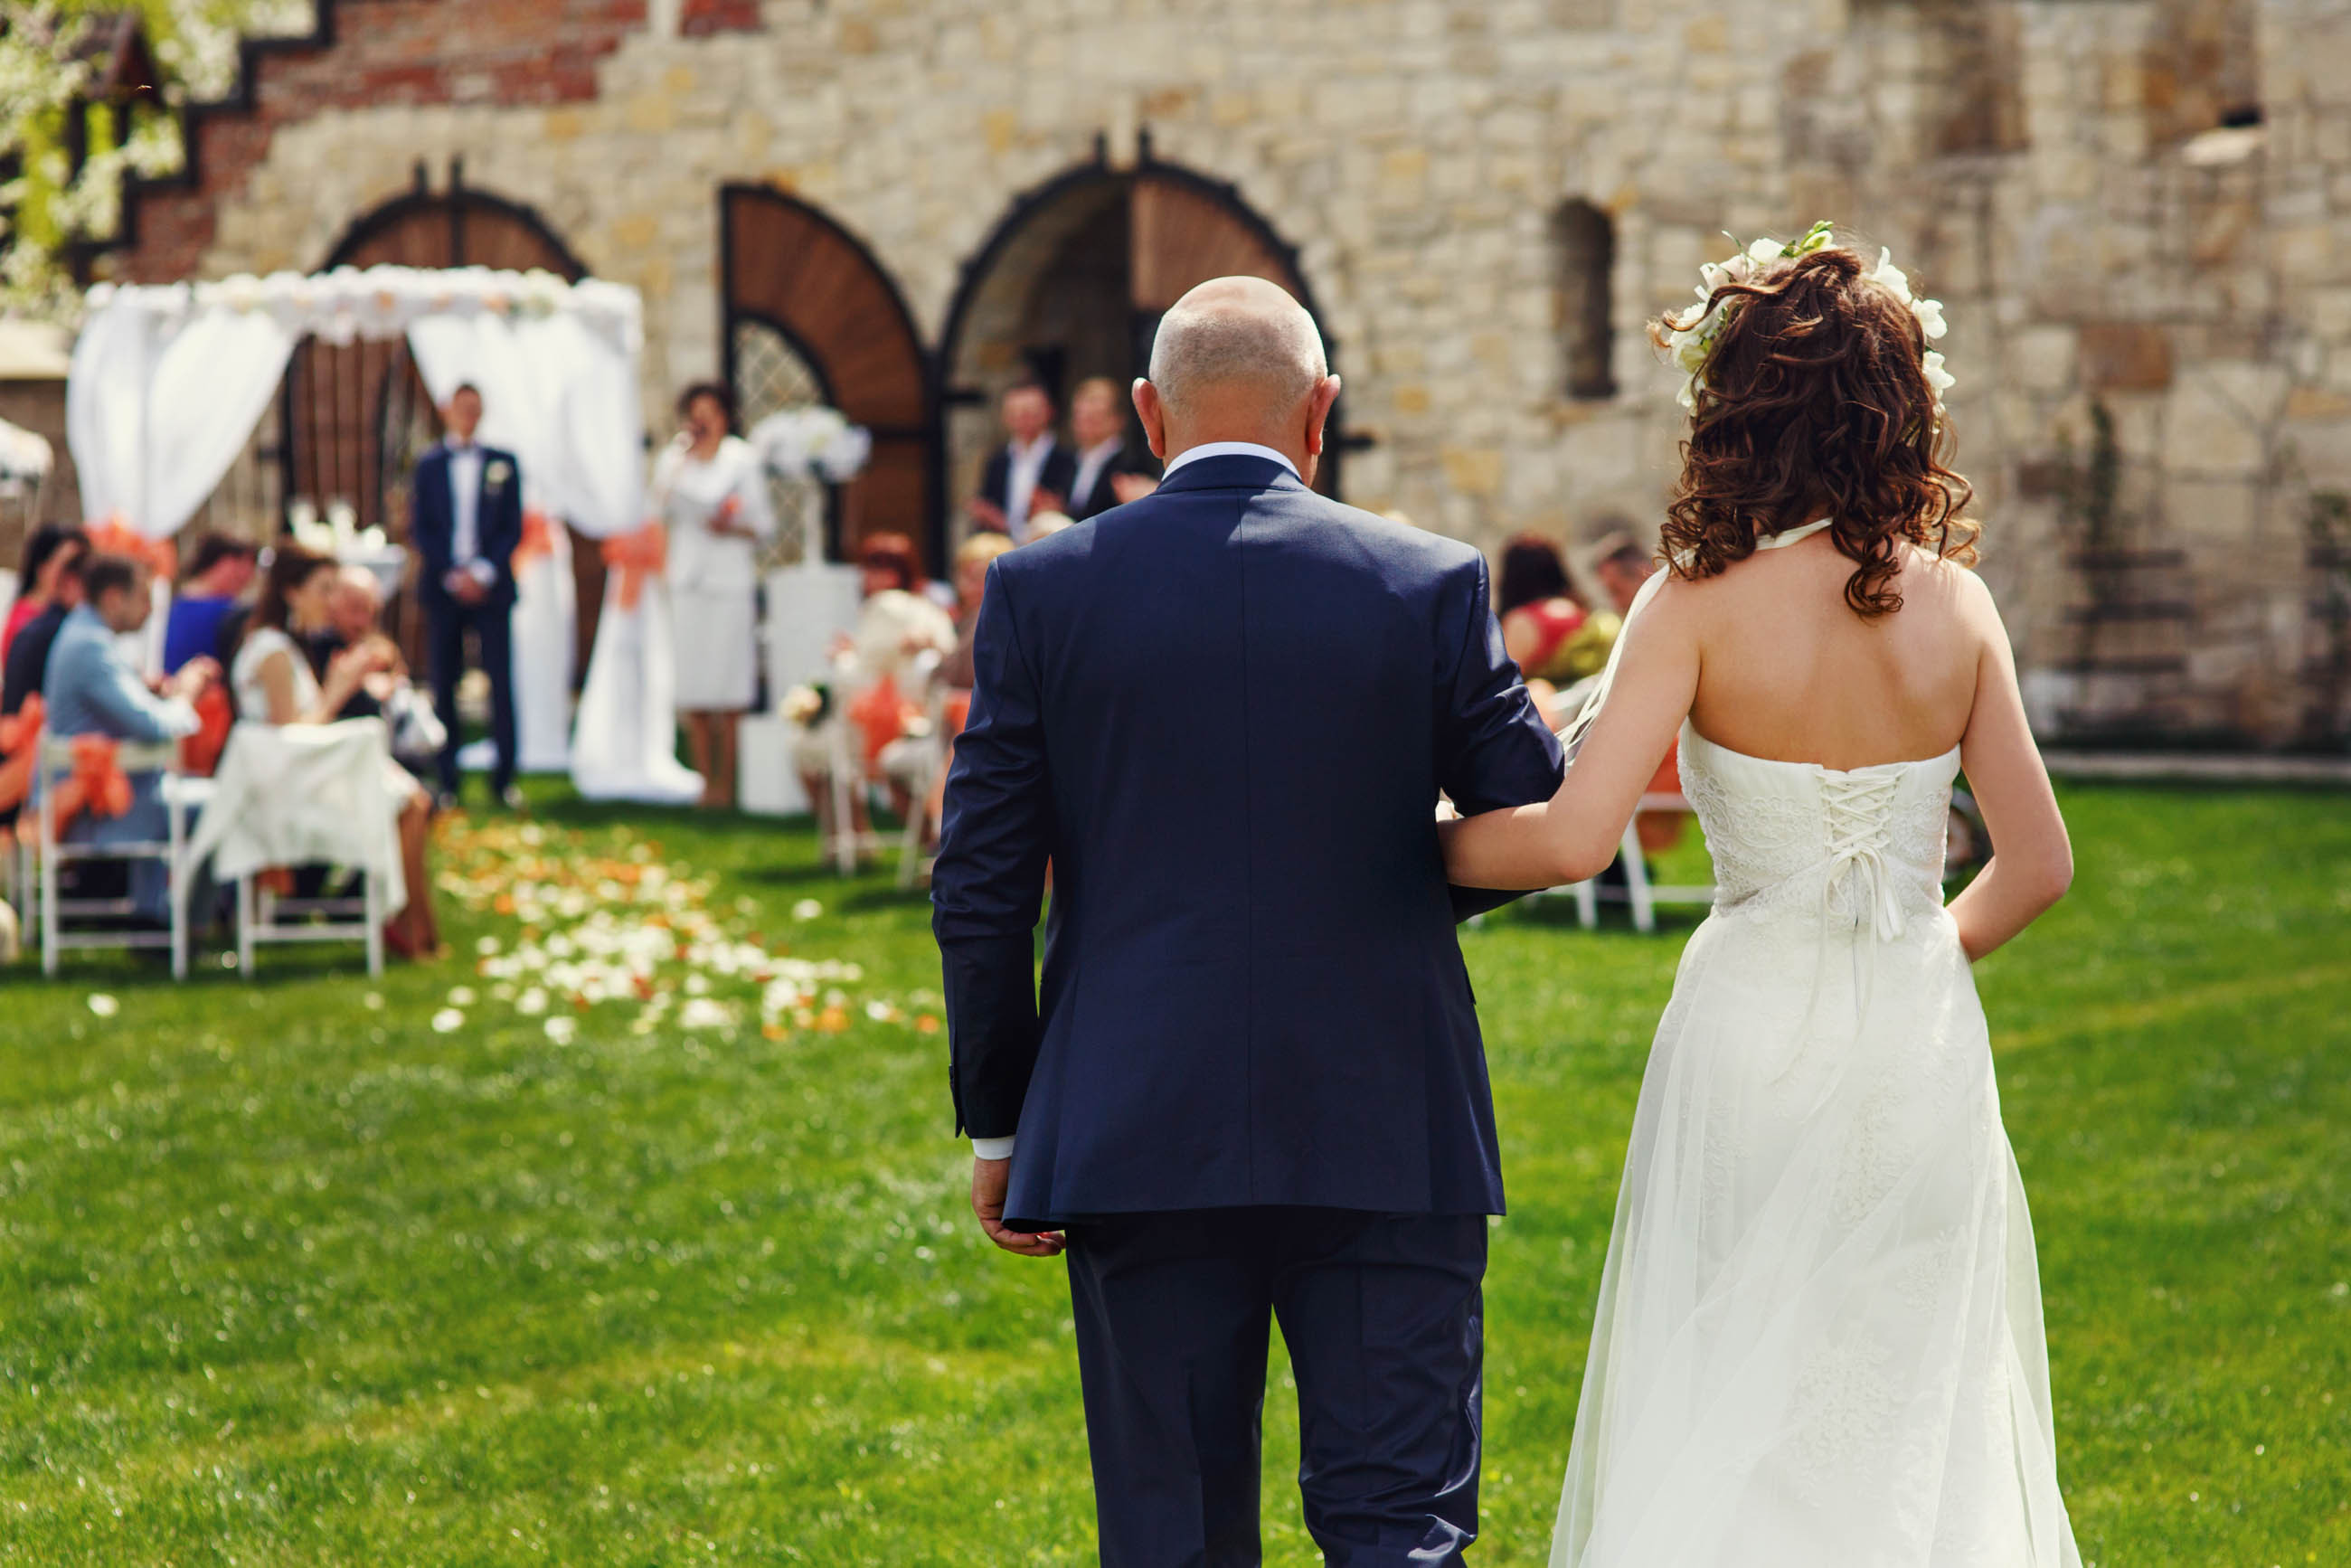 Une mariée descend l'allée avec son père | Source : Shutterstock